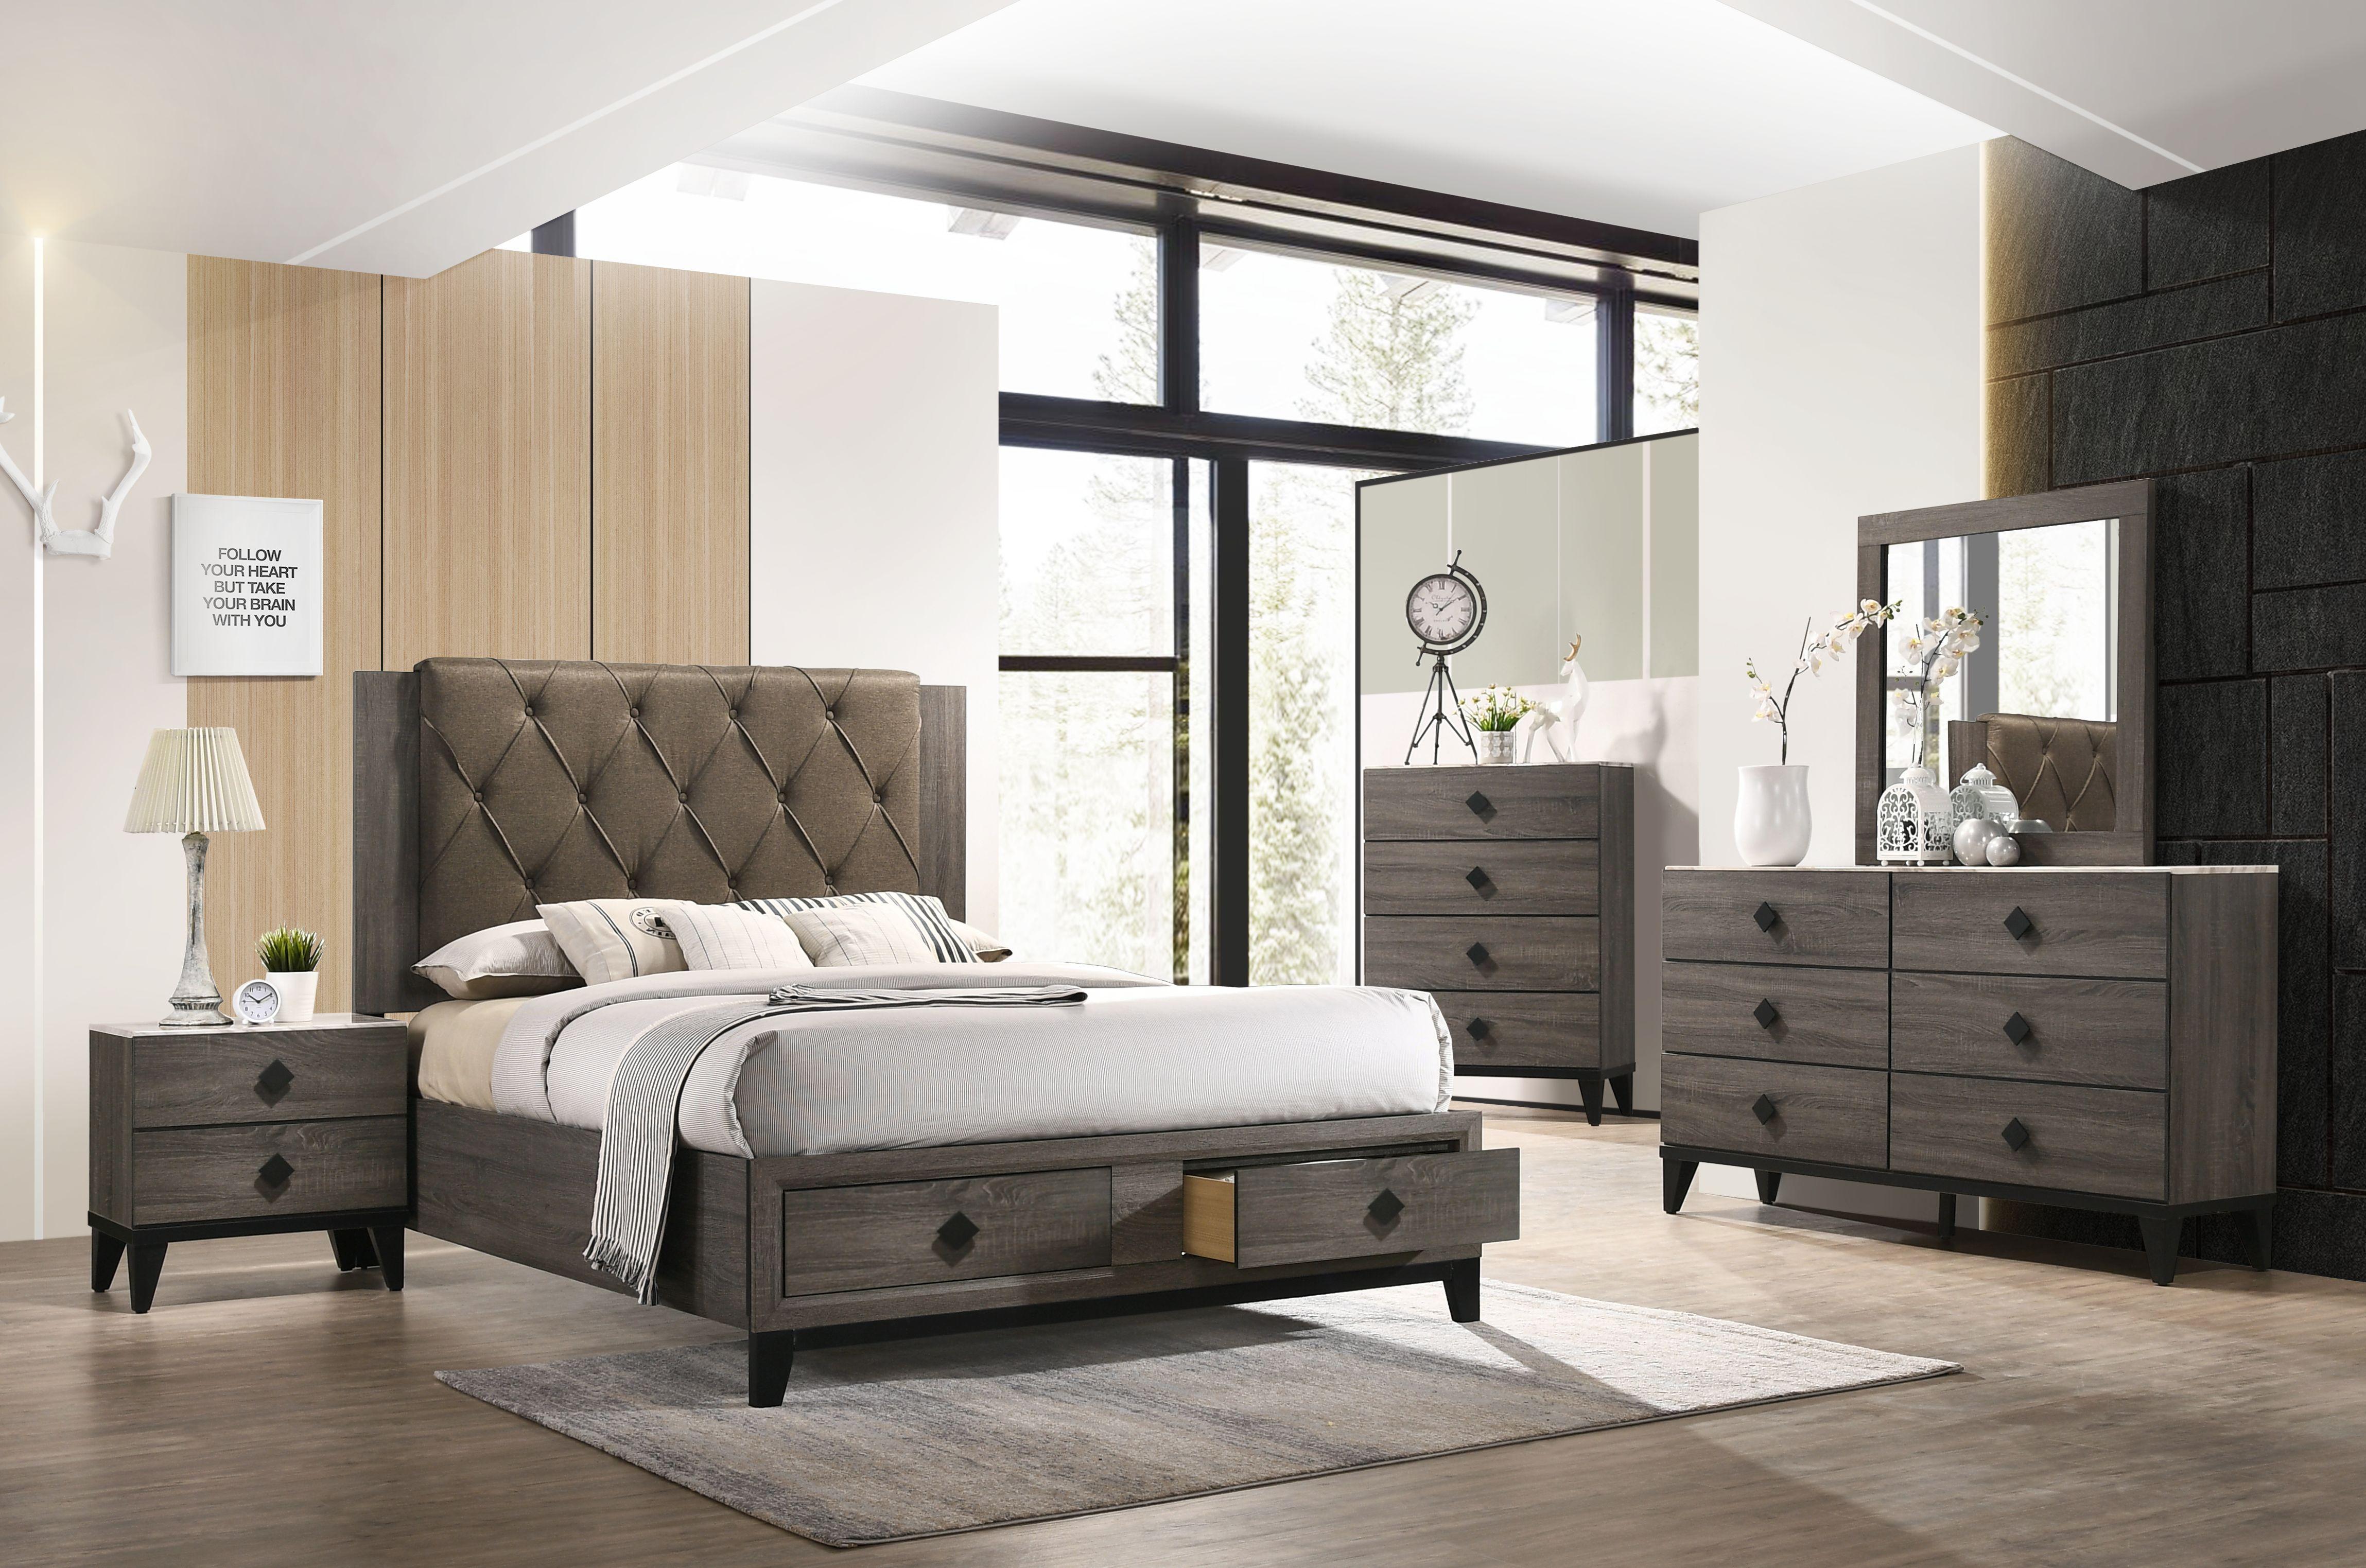 

    
27670Q-S-3pcs Transitional Fabric & Rustic Gray Oak Queen Bedroom Set 3PCS by Acme Avantika-27670Q-S
